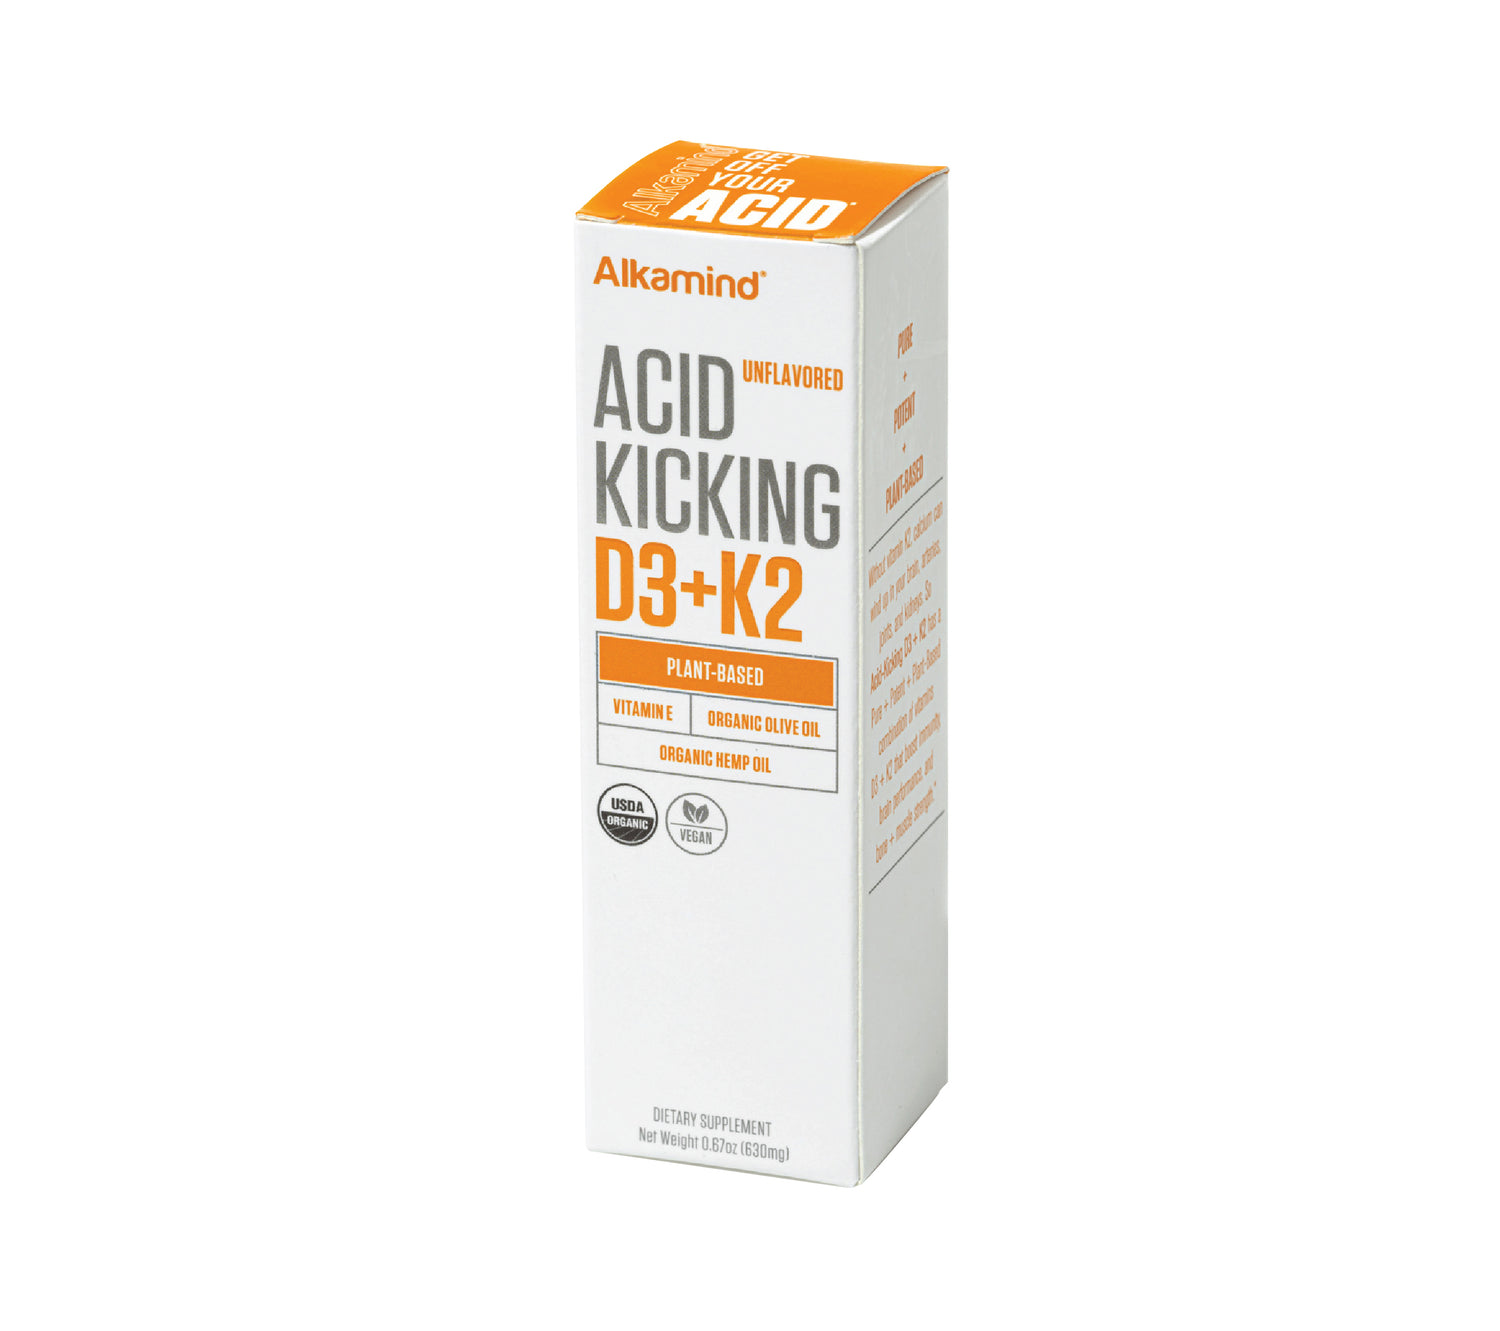 Acid-Kicking D3+K2 Unflavored